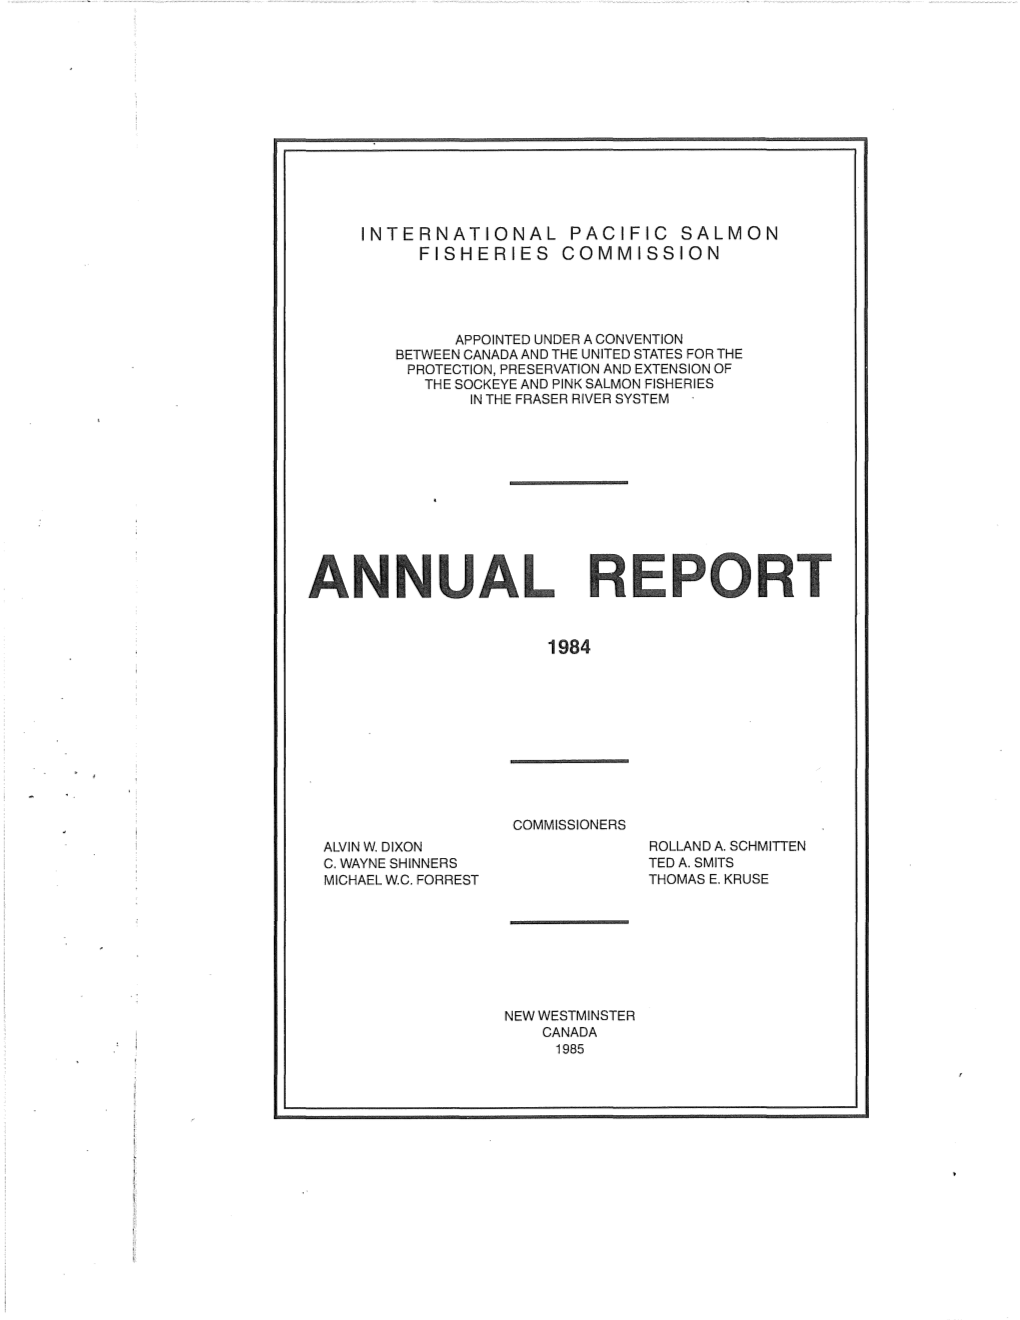 IPSFC Annual Report 1984